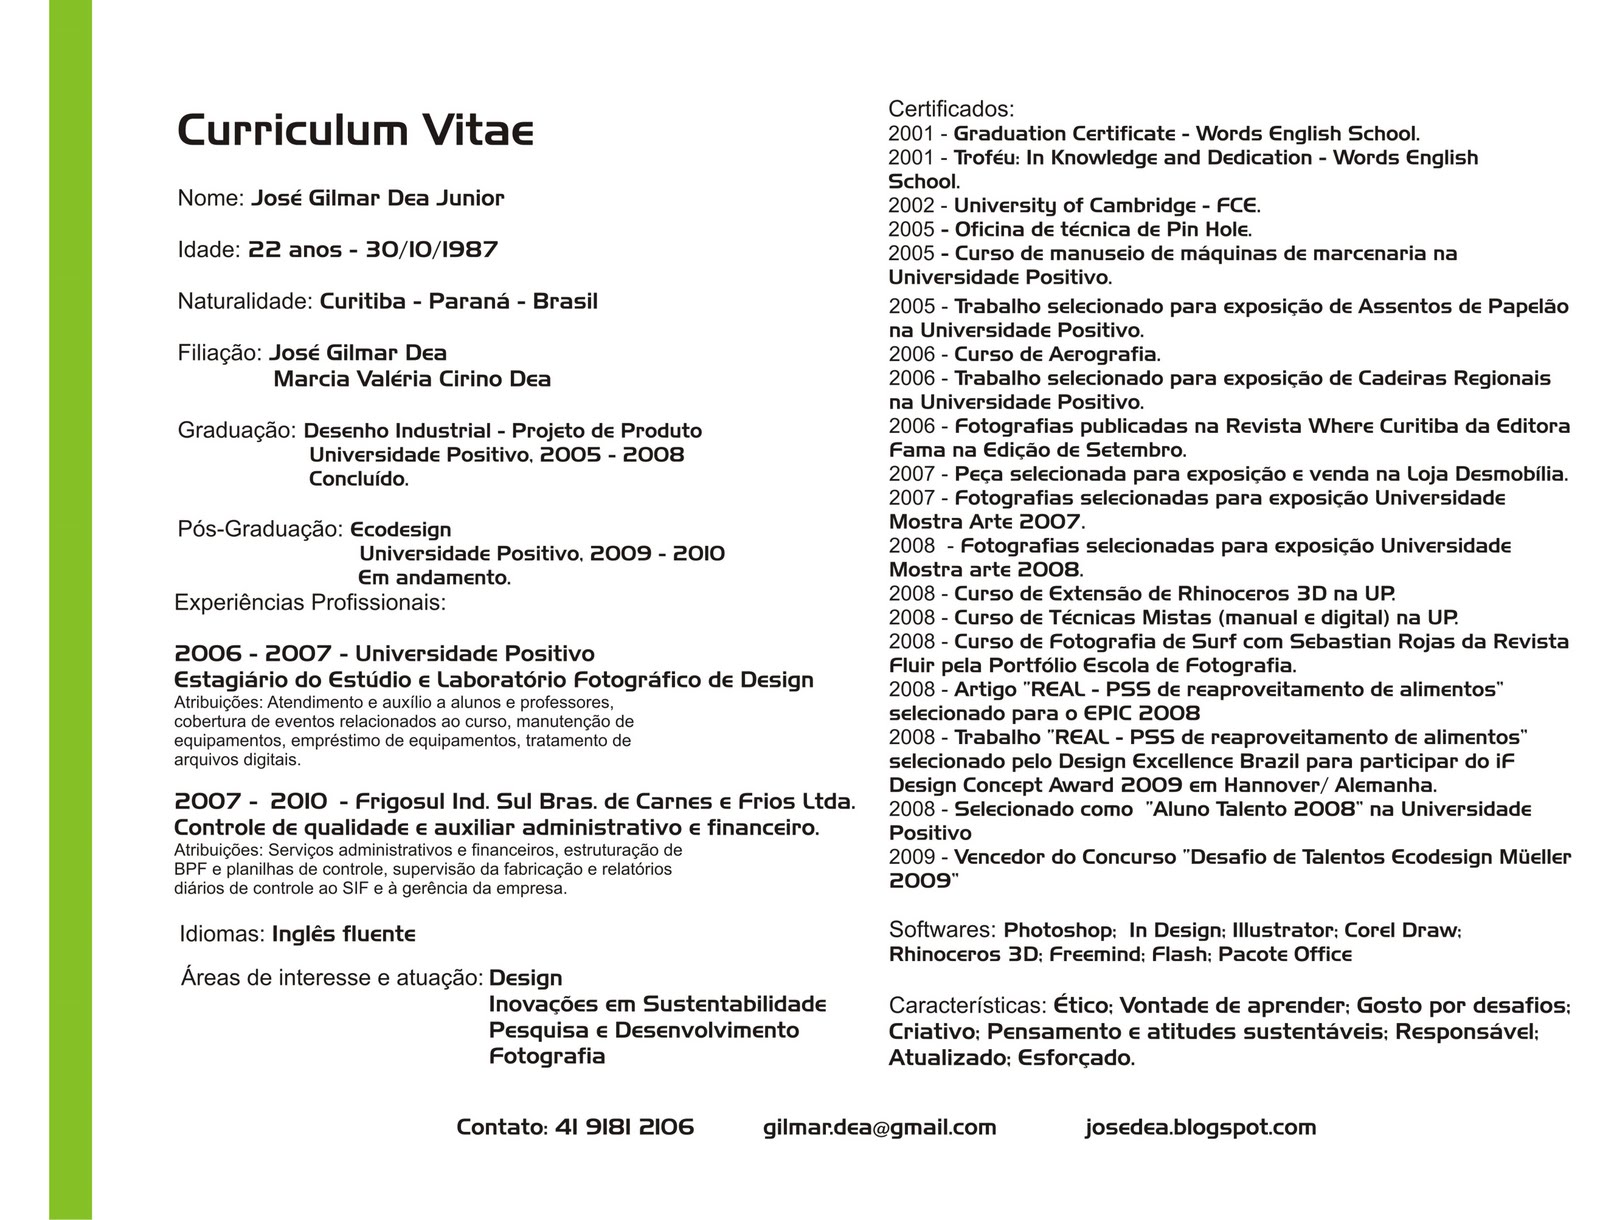 Curriculum vitae atualizado - José Gilmar Dea  Junior